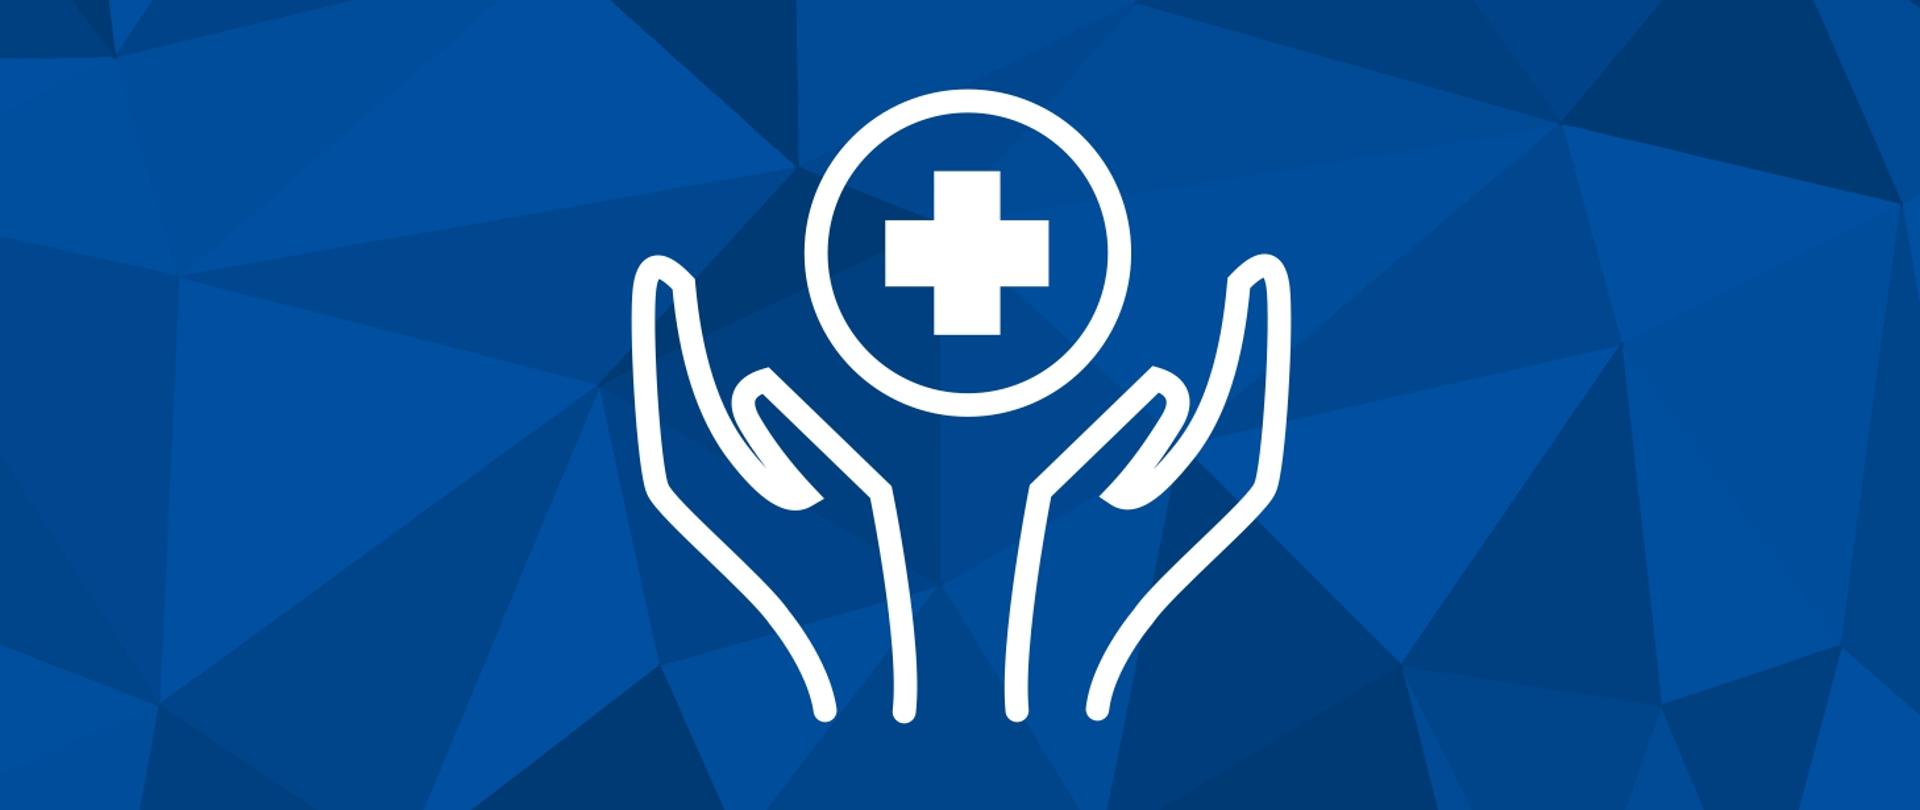 Grafika przedstawia białą ikonę w postaci dłoni otaczających symbol opieki zdrowotnej, białego krzyża w okręgu. Tło grafiki złożone jest trójkątów w odcieniach koloru niebieskiego.